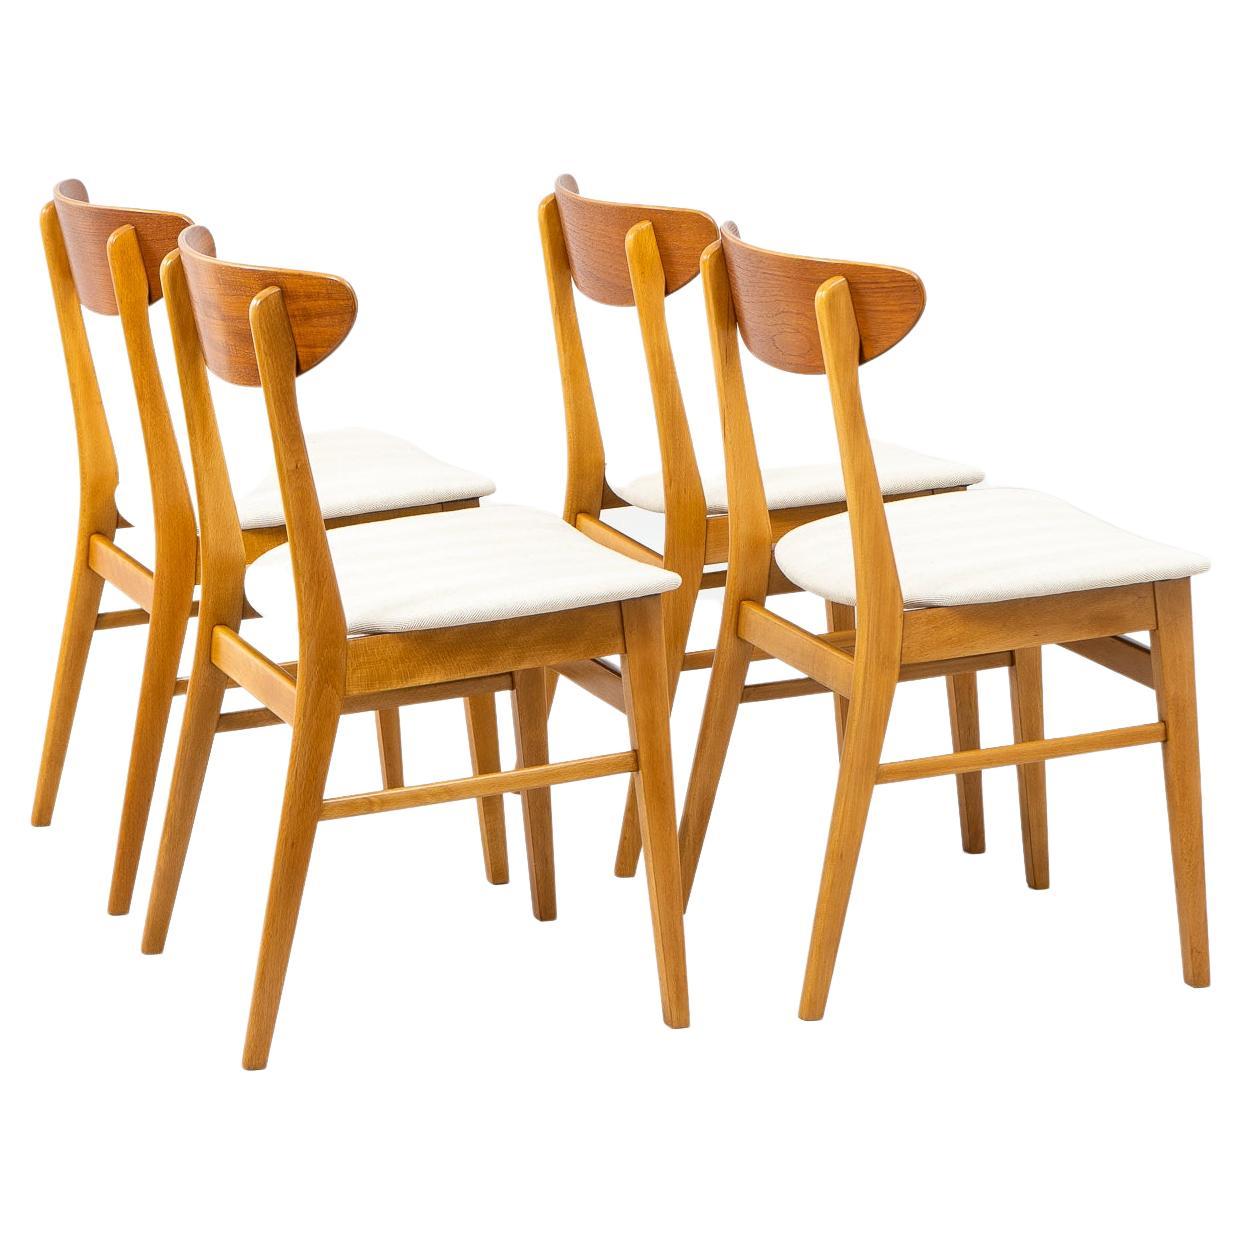 Satz von 4 Stühlen aus Teakholz und Buchenholz, Modell 210 von Farstrup Stolefabrik, um 1960